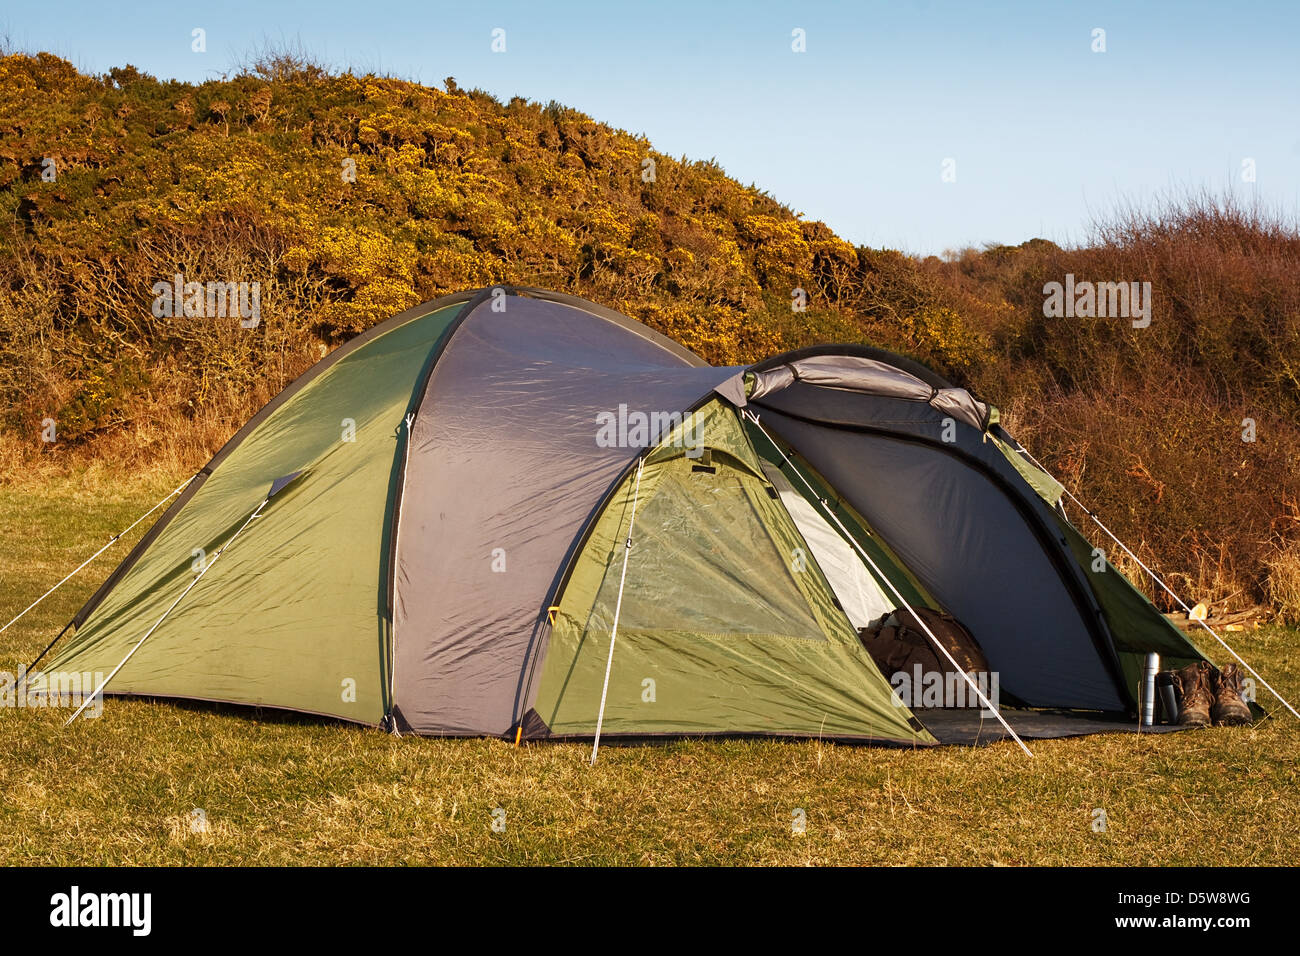 Kuppel Zelt im Feld für wildes Campen in der freien Natur mit Frontklappe öffnen zeigt Interieur Stockfoto